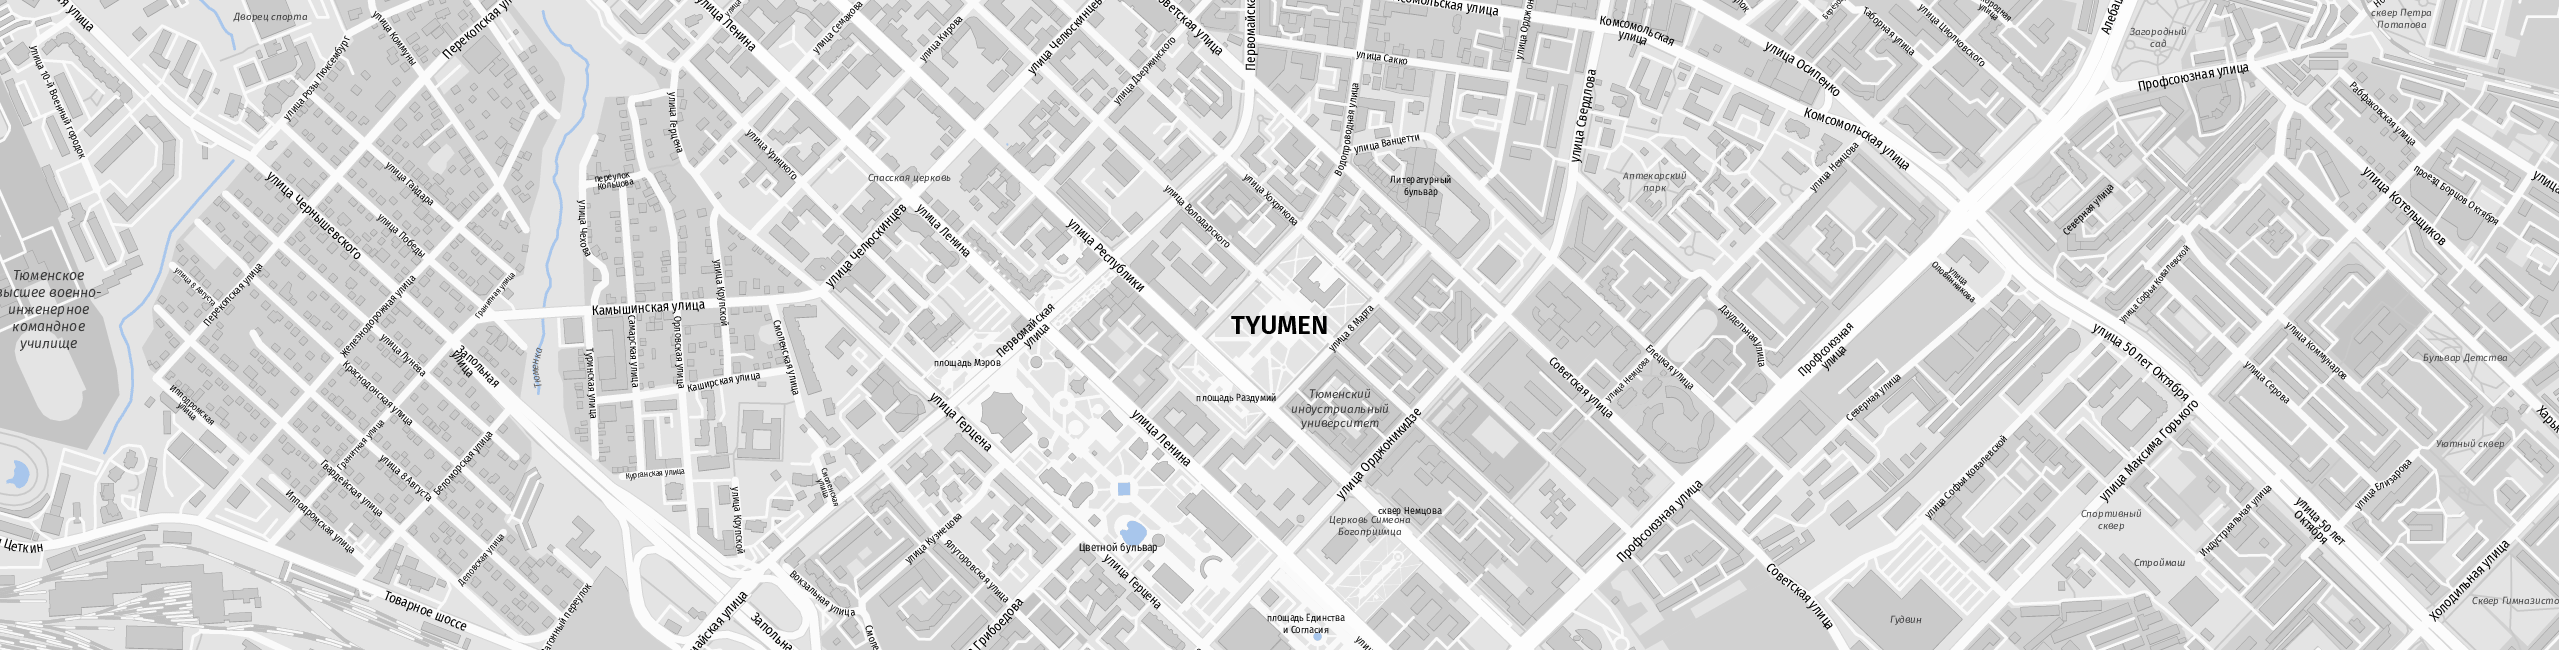 Stadtplan Tjumen zum Downloaden.